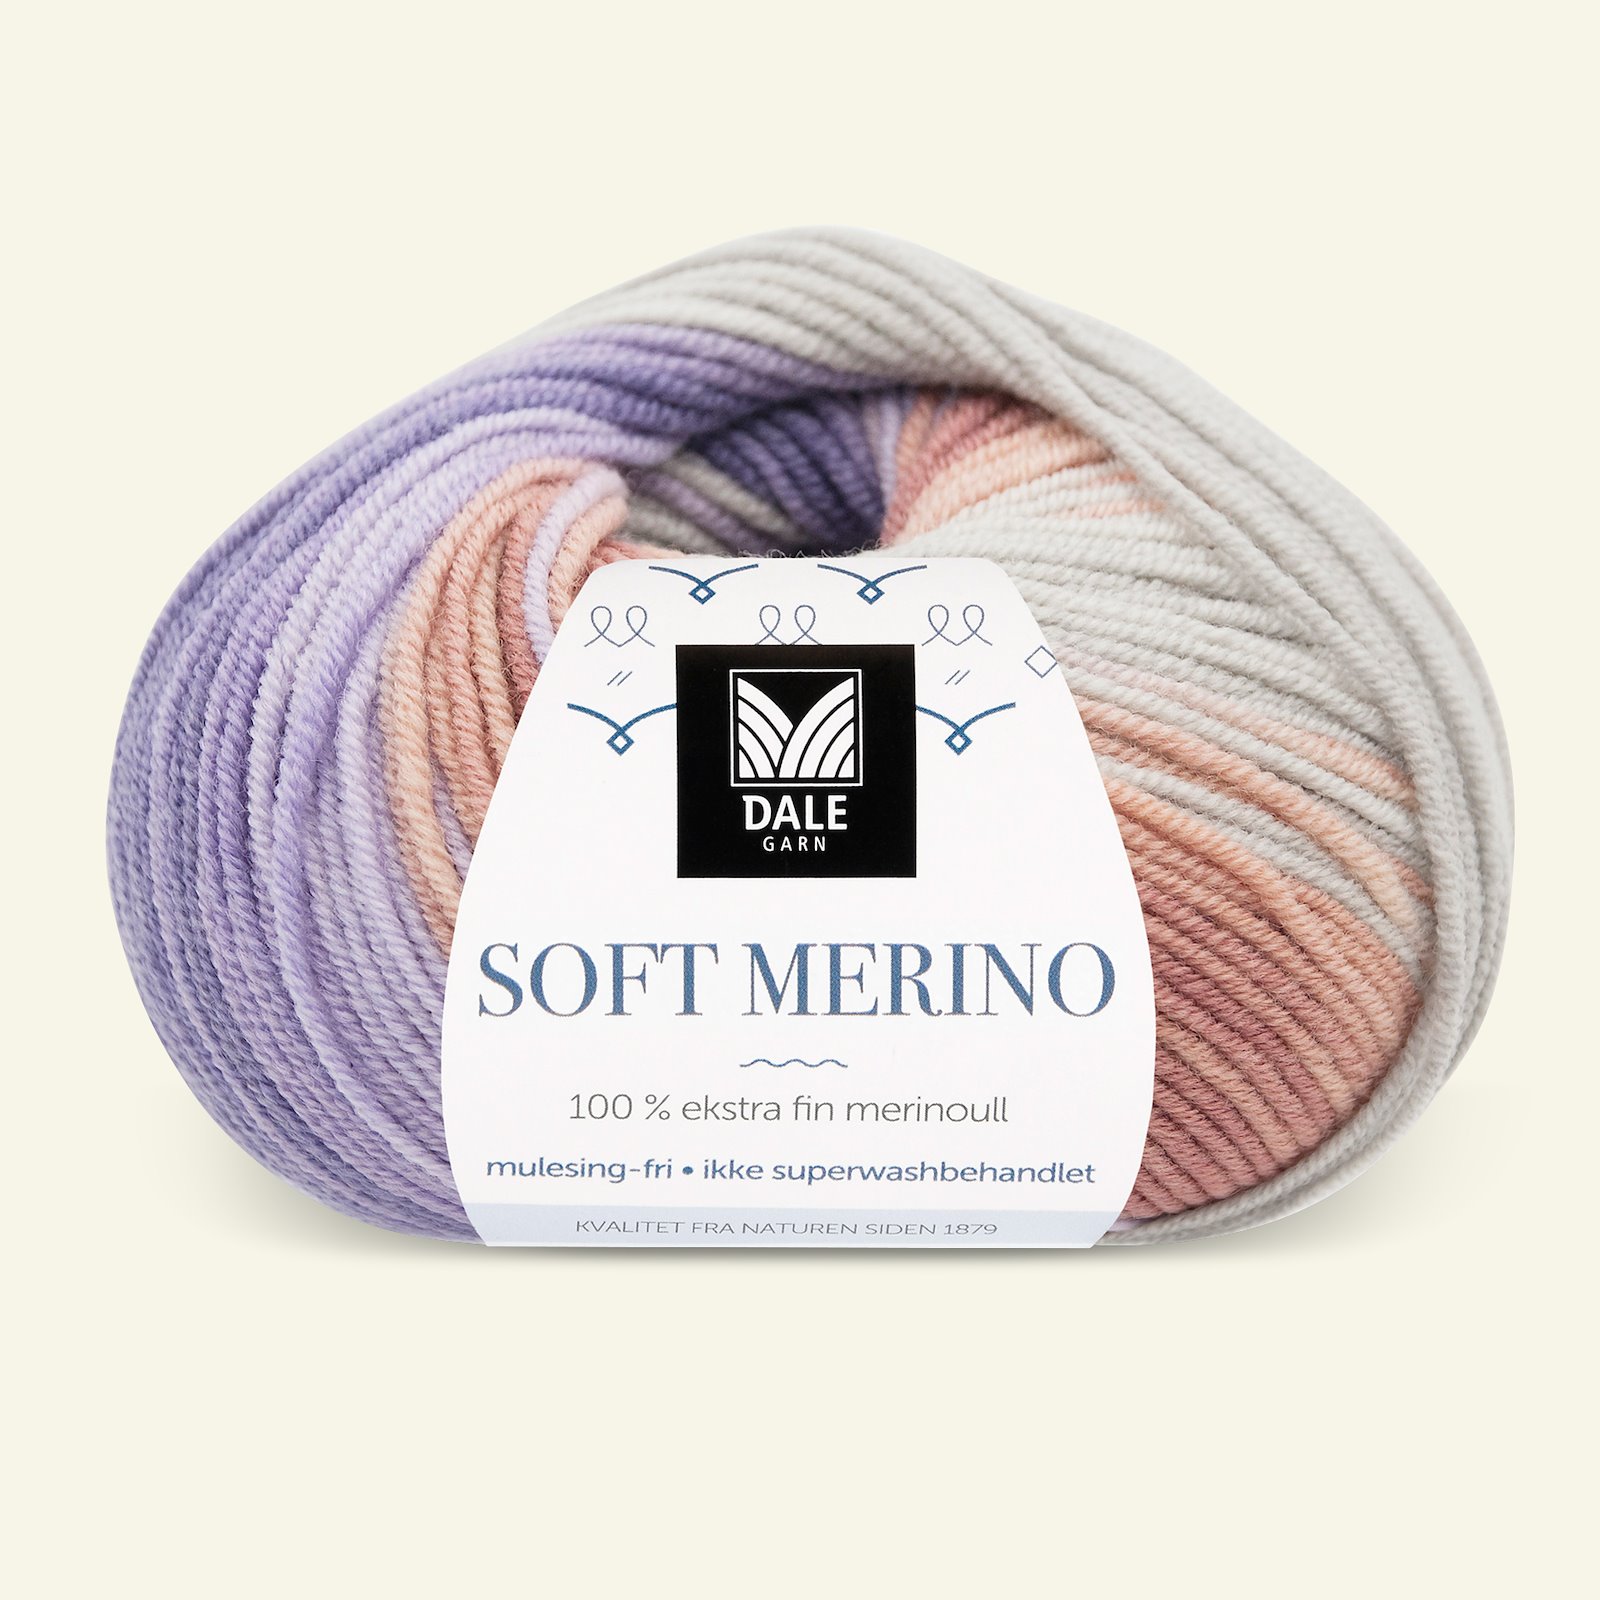 Dale Garn, 100% extra fine merino wool yarn, "Soft Merino", purple printed 90001222_pack